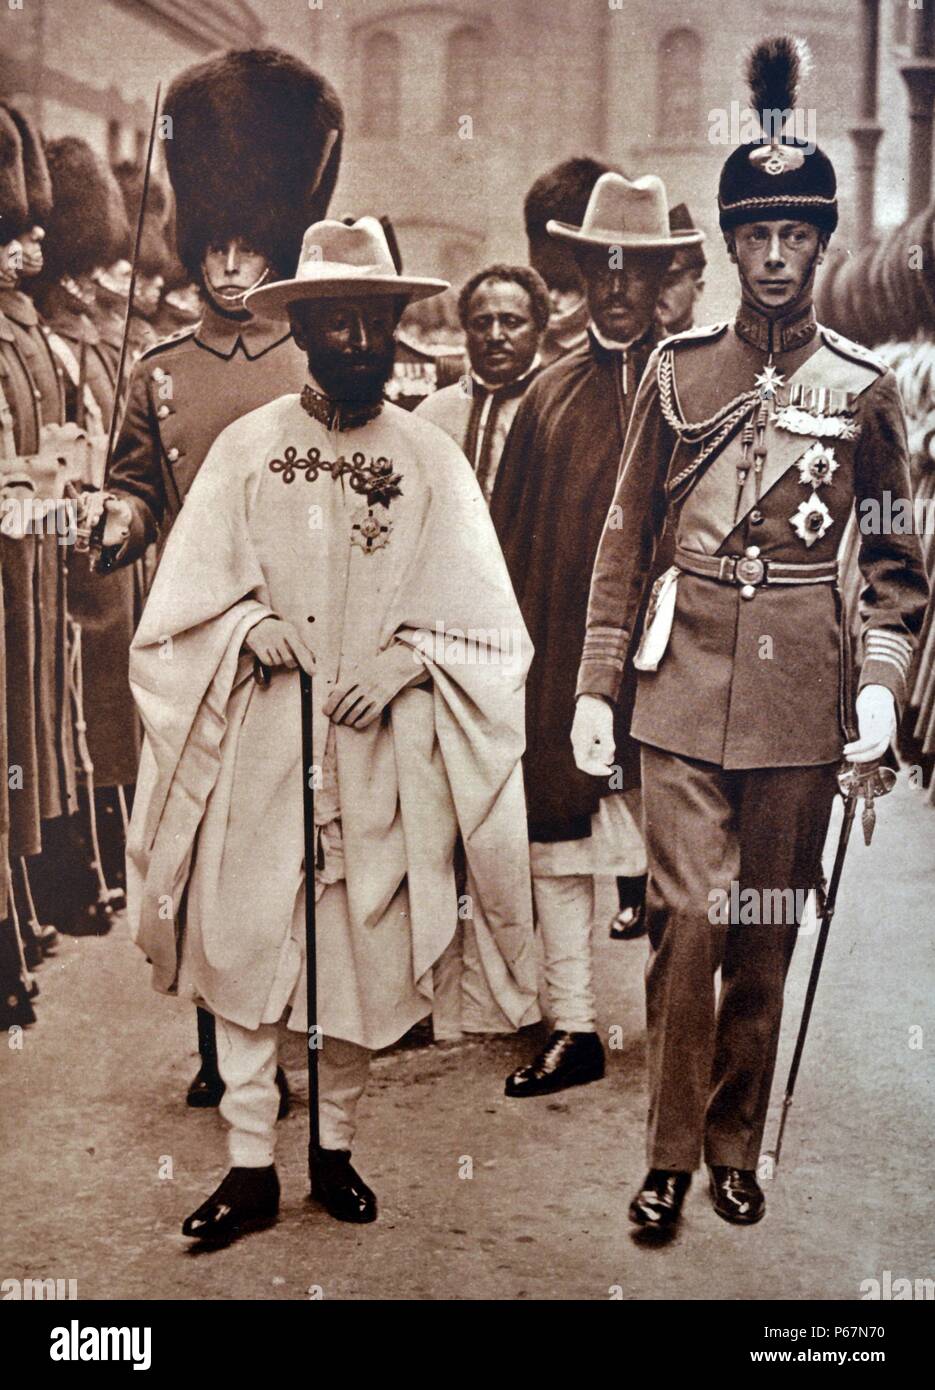 La photo montre Ras Tafari, Prince Régent de l'Éthiopie se rendant sur l'Angleterre. Il a été accueilli par le duc de York (futur roi George VI) à Douvres, et s'est entretenu avec le roi George V et le premier ministre au cours de son temps en Angleterre. Banque D'Images